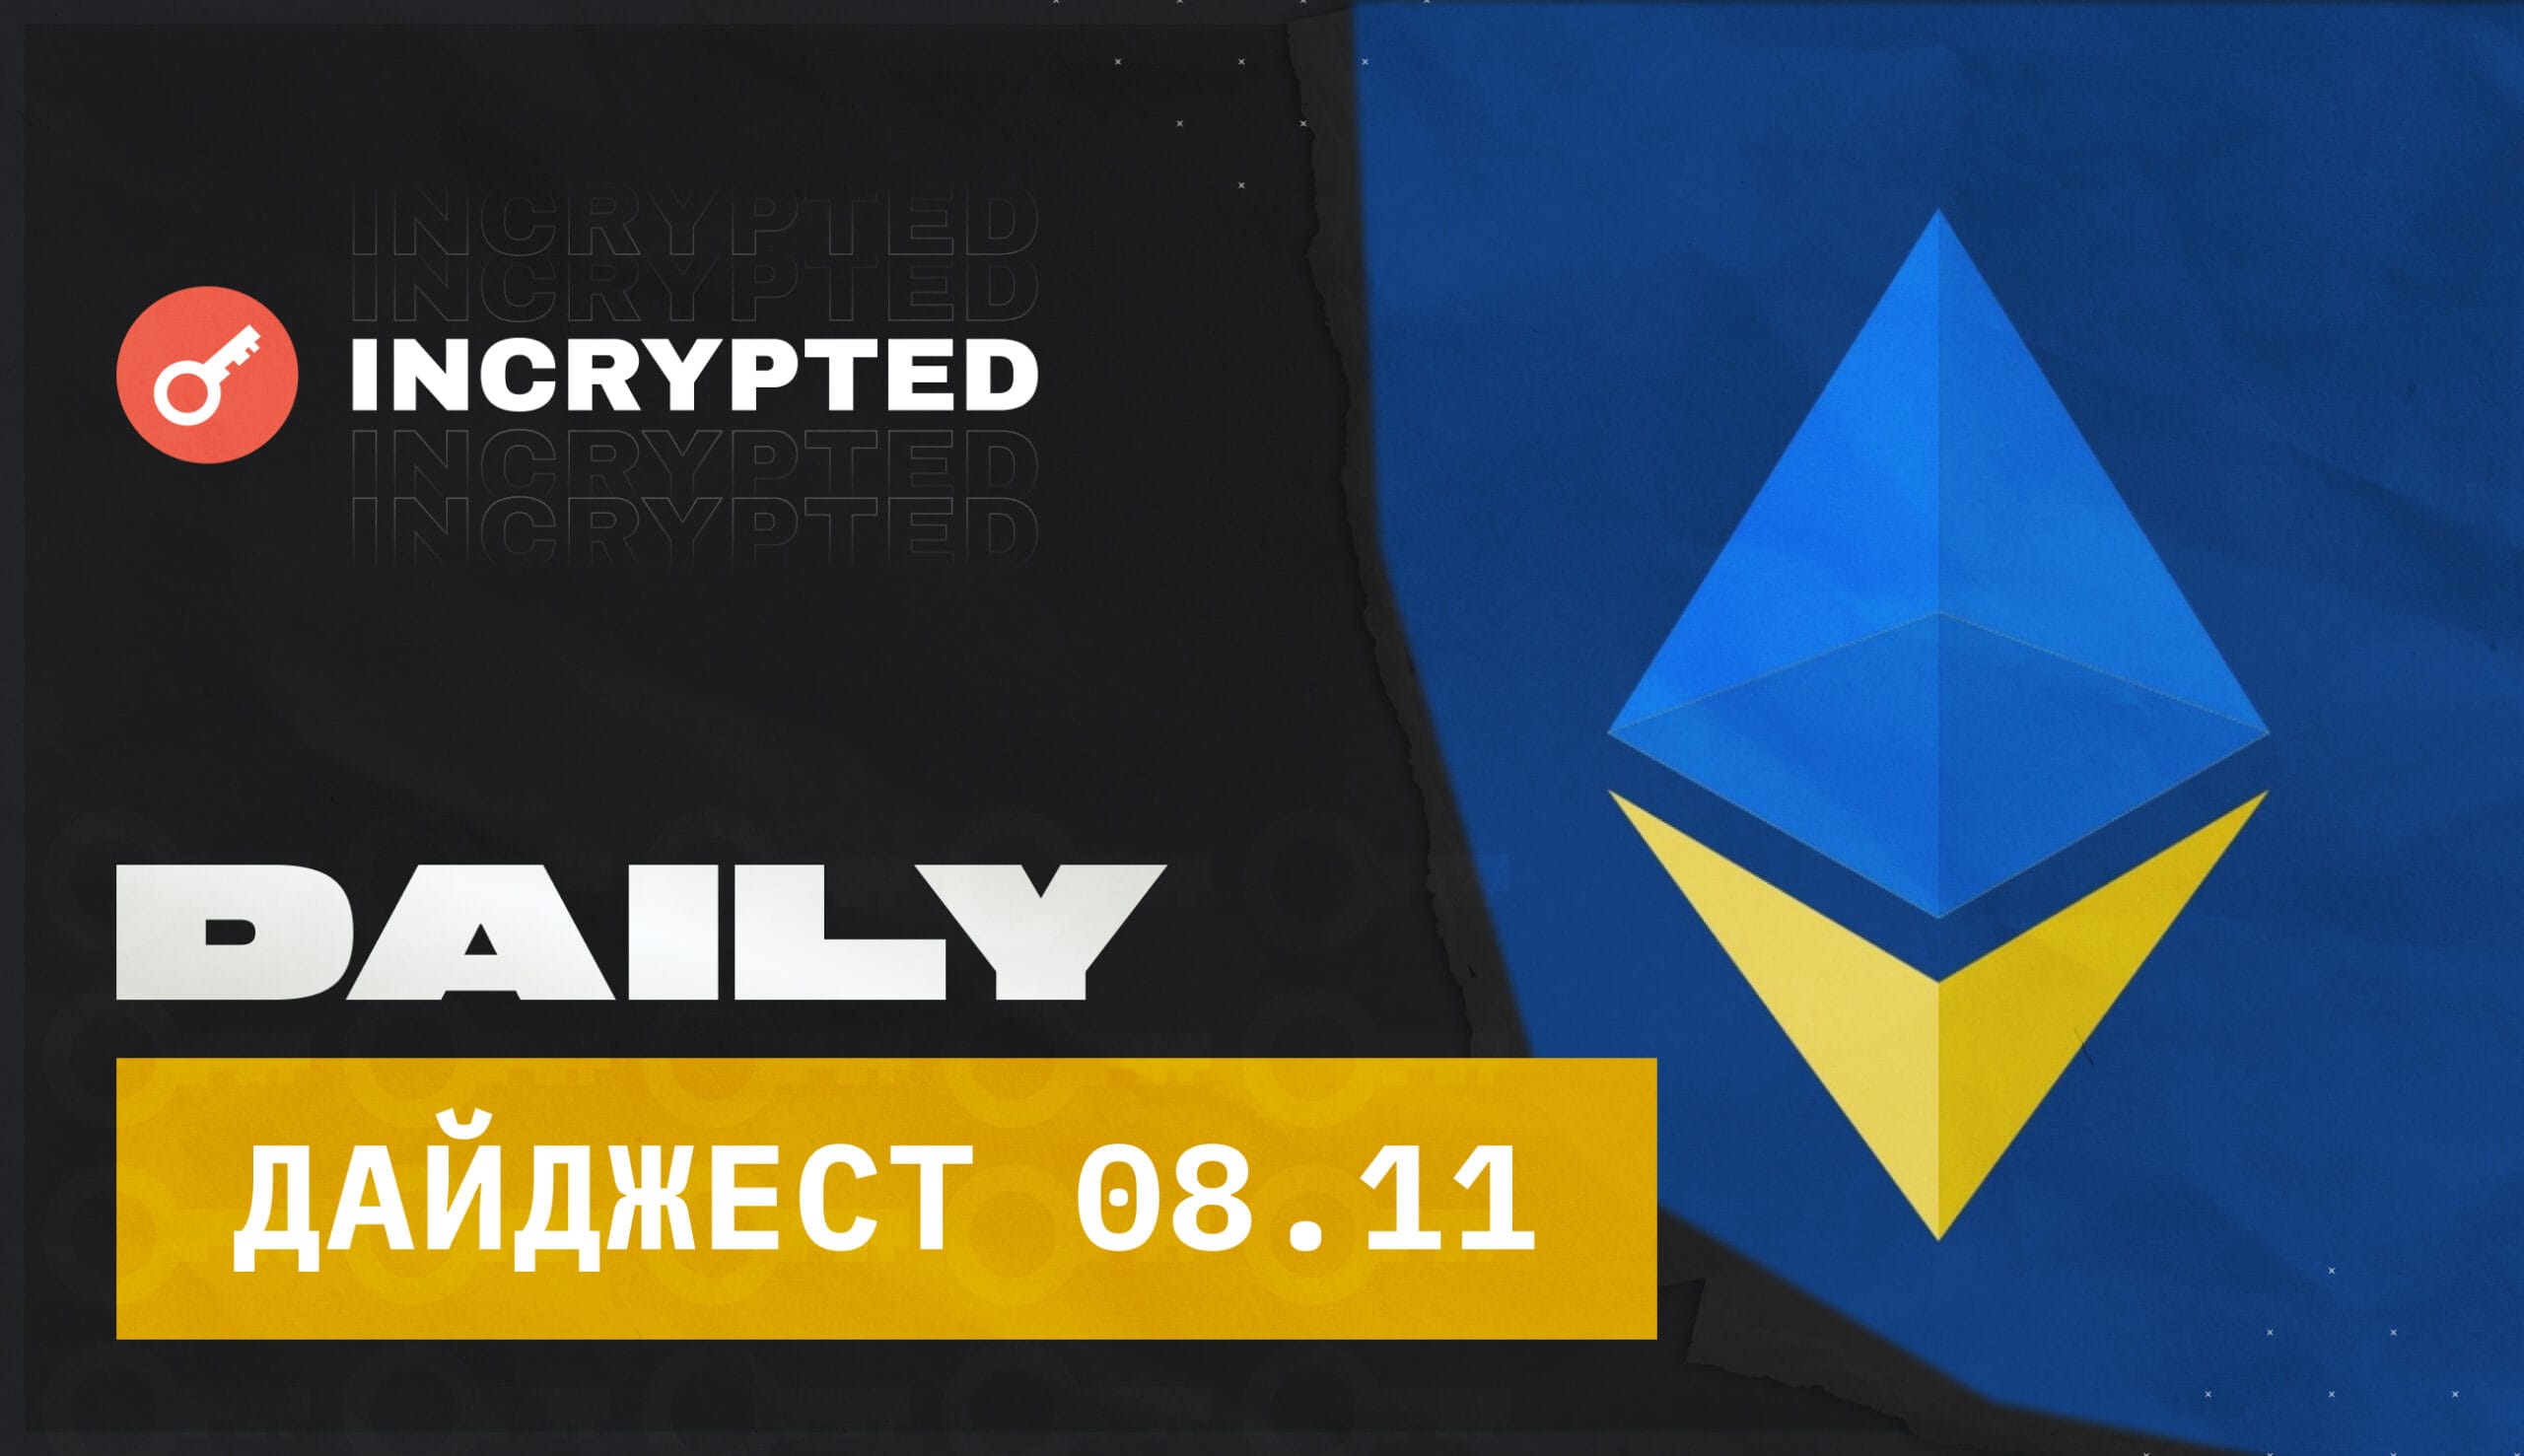 Kyiv Ethereum Community, Bitmex залистит нативный токен BMEX, Rolex планирует выпустить фирменные NFT, а Binance явно решили уничтожить FTX и другие крипто новости дня.